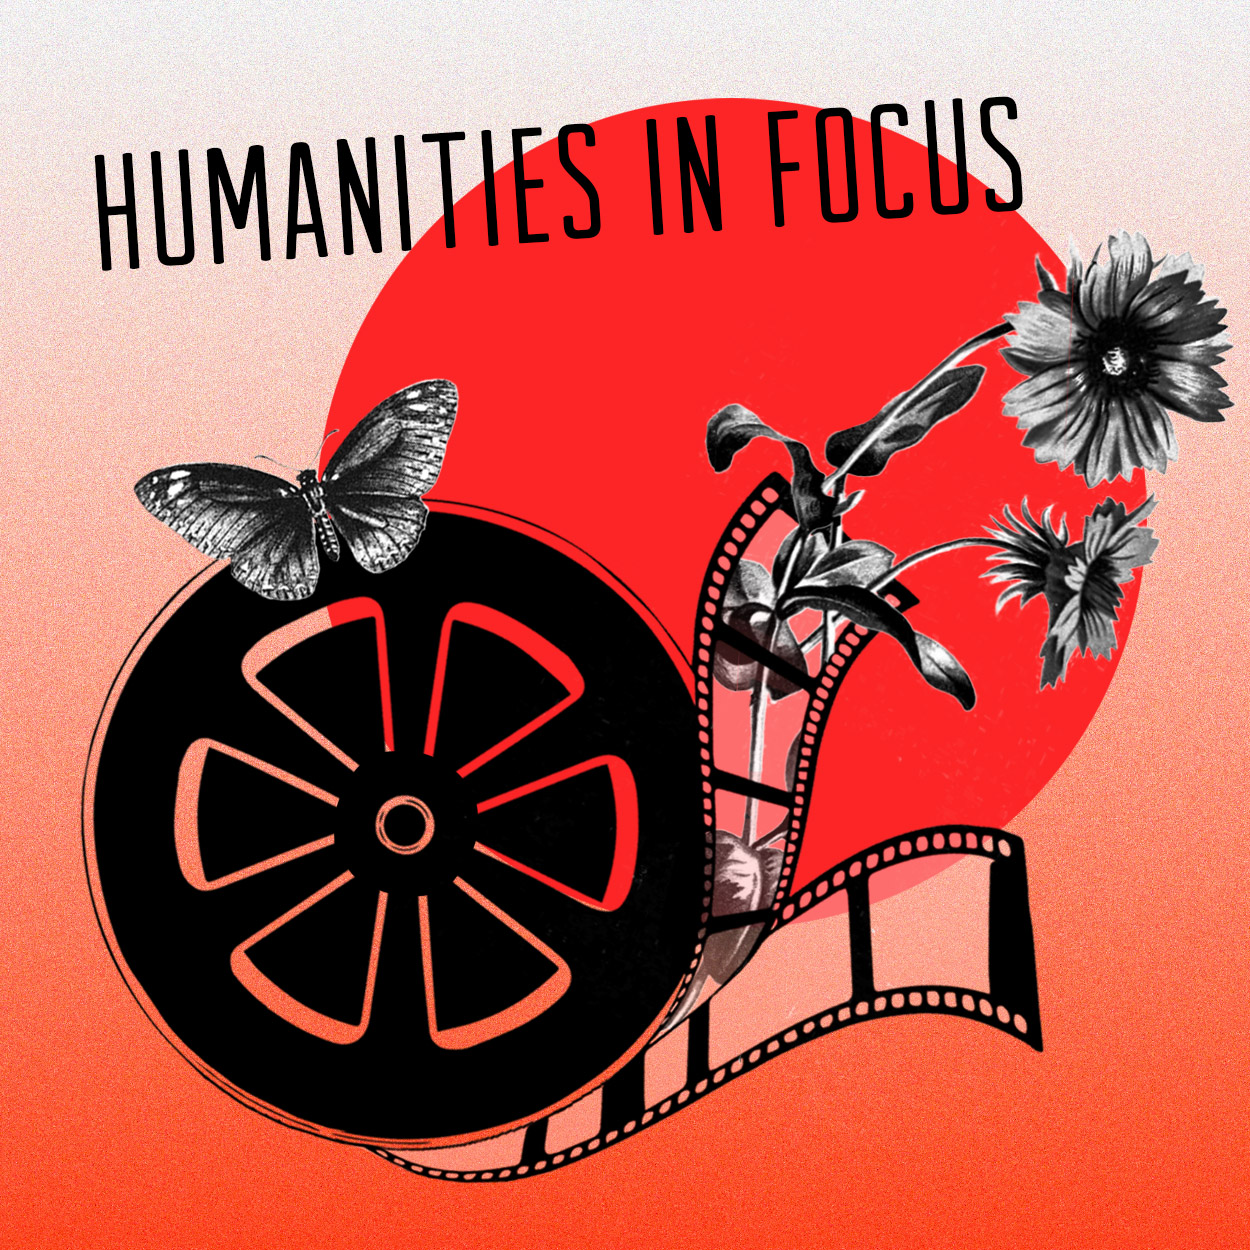 Humanities in Focus